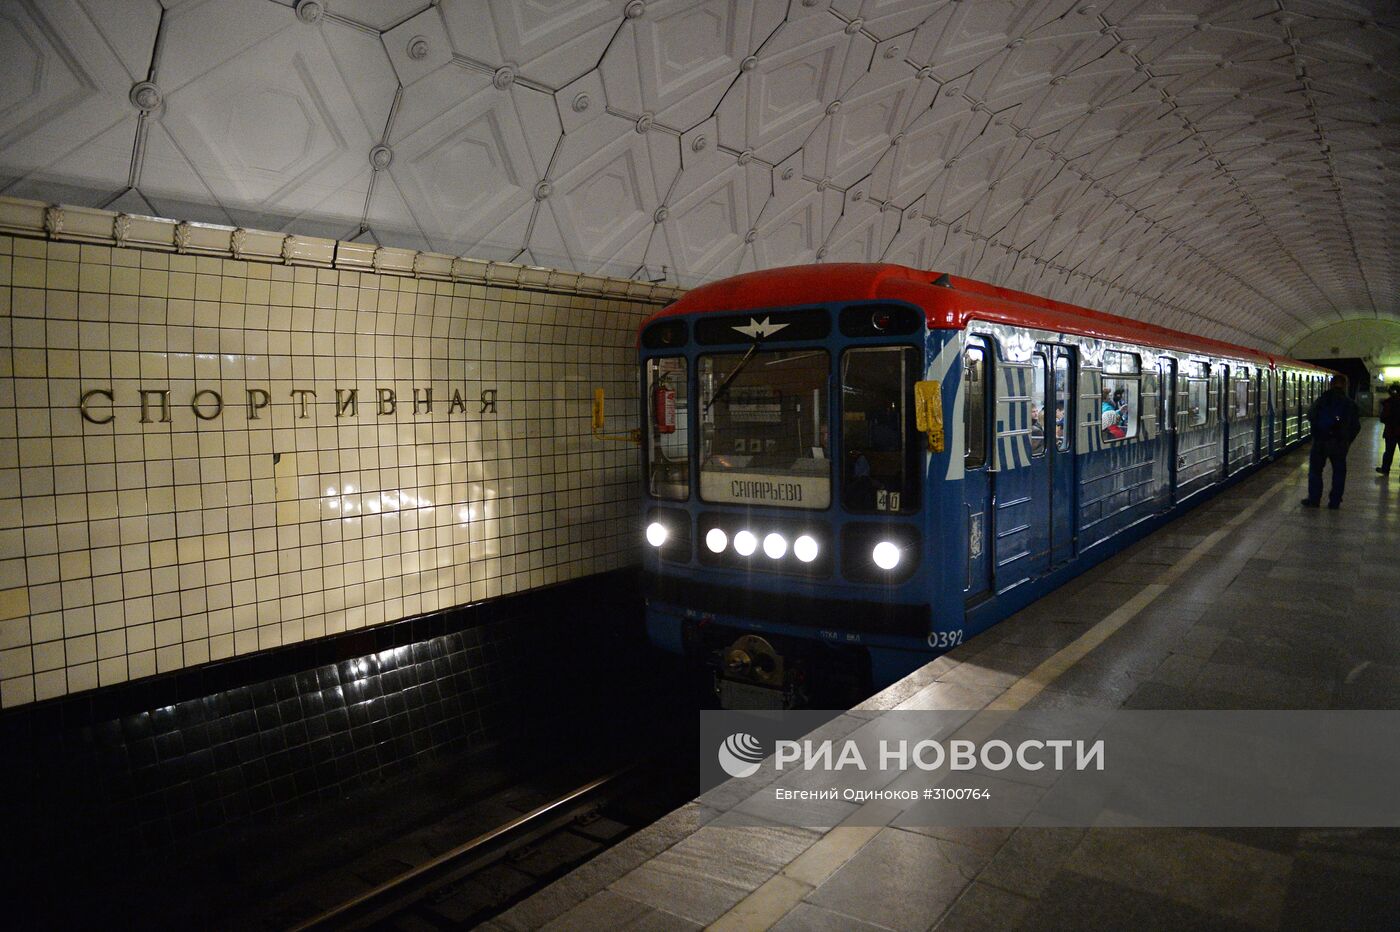 Станцию московского метро "Спортивная" закрыли по требованию полиции